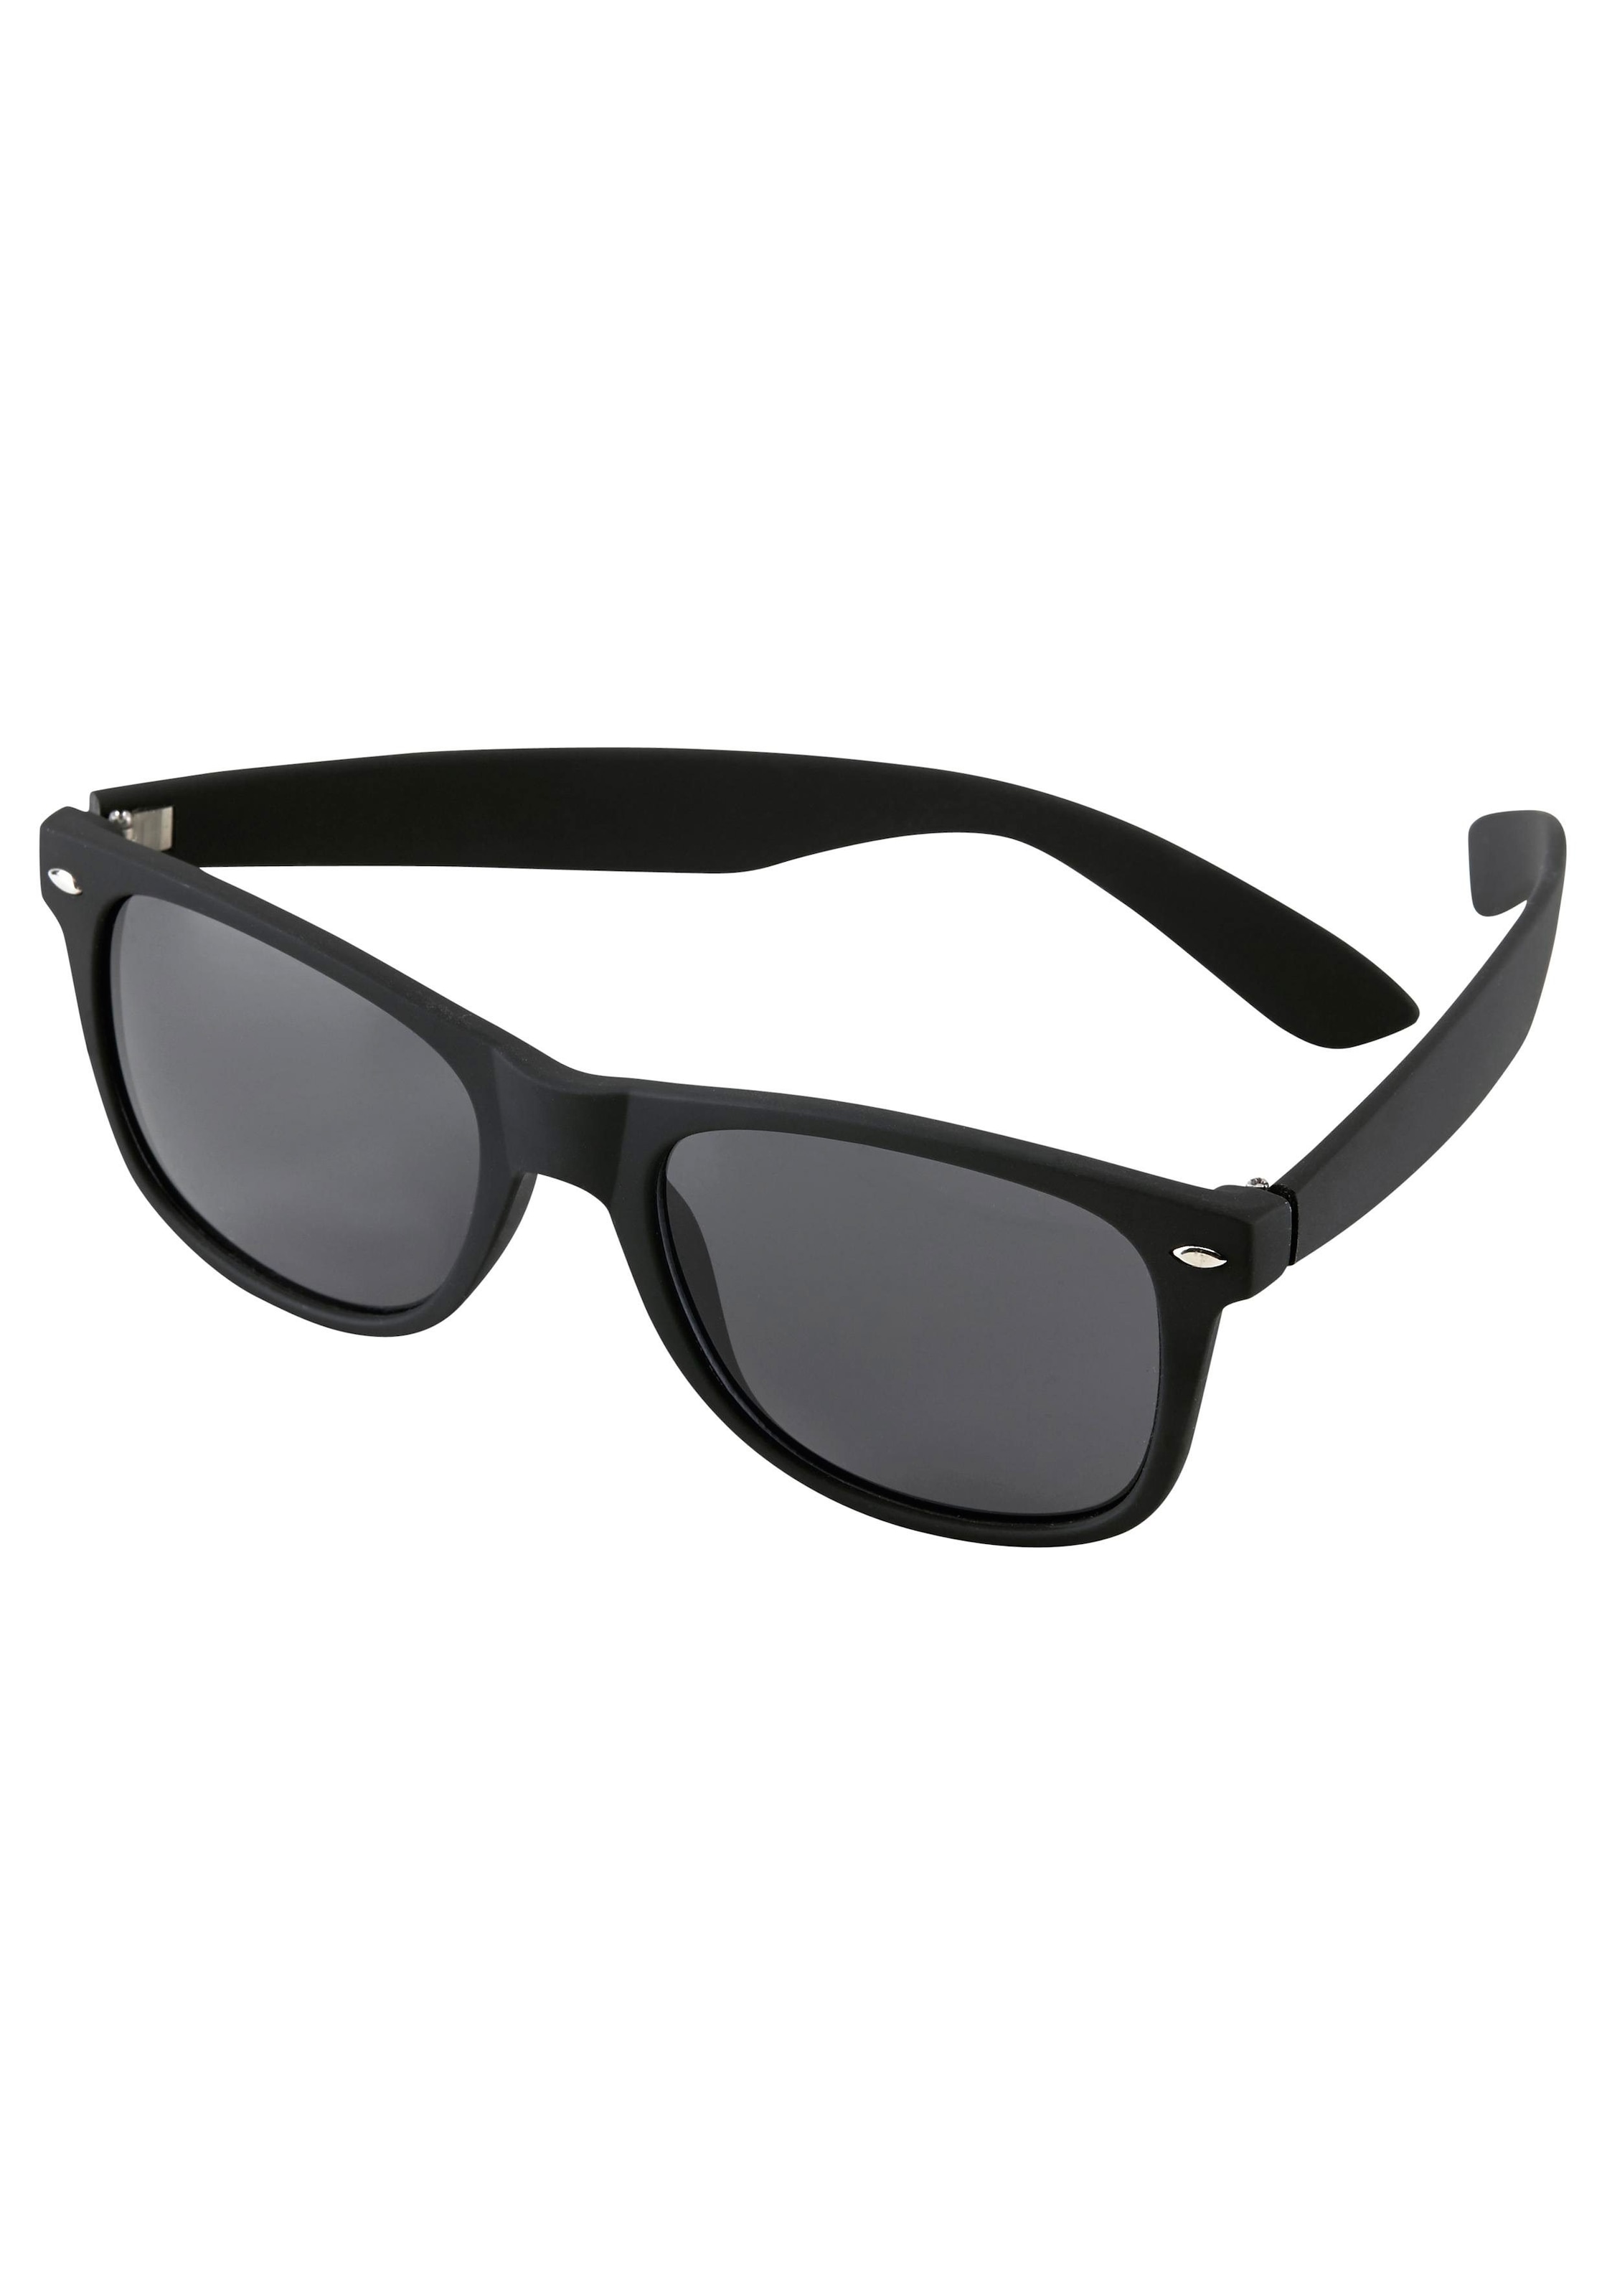 YOUNG SPIRIT LONDON Eyewear Sonnenbrille, Trendige Vollrand-Sonnenbrille  online bestellen bei OTTO